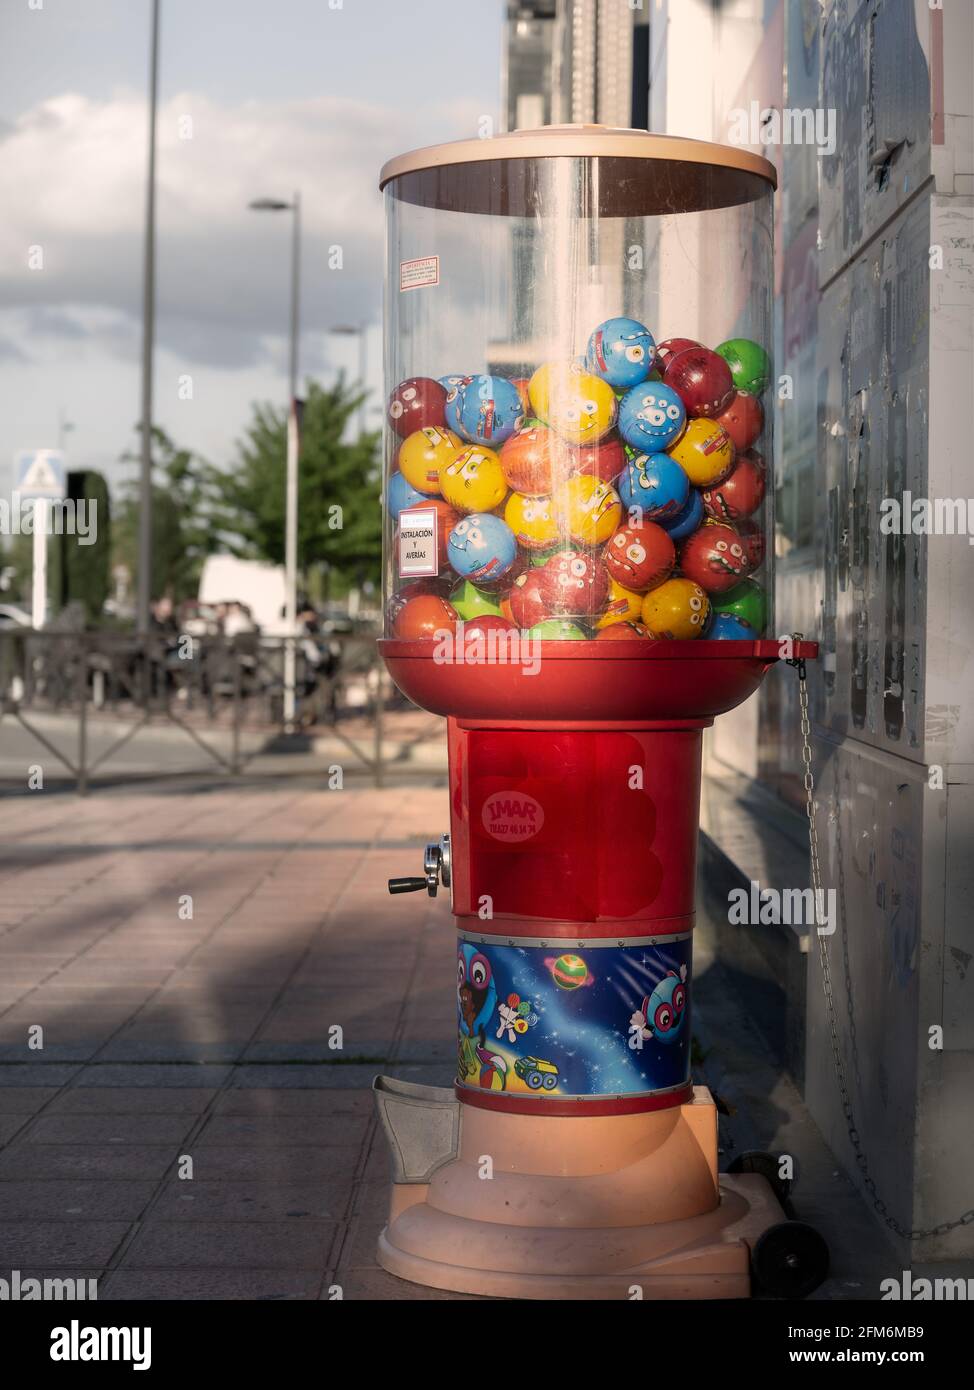 distributeur de jouets en capsules dans une rue urbaine Photo Stock - Alamy